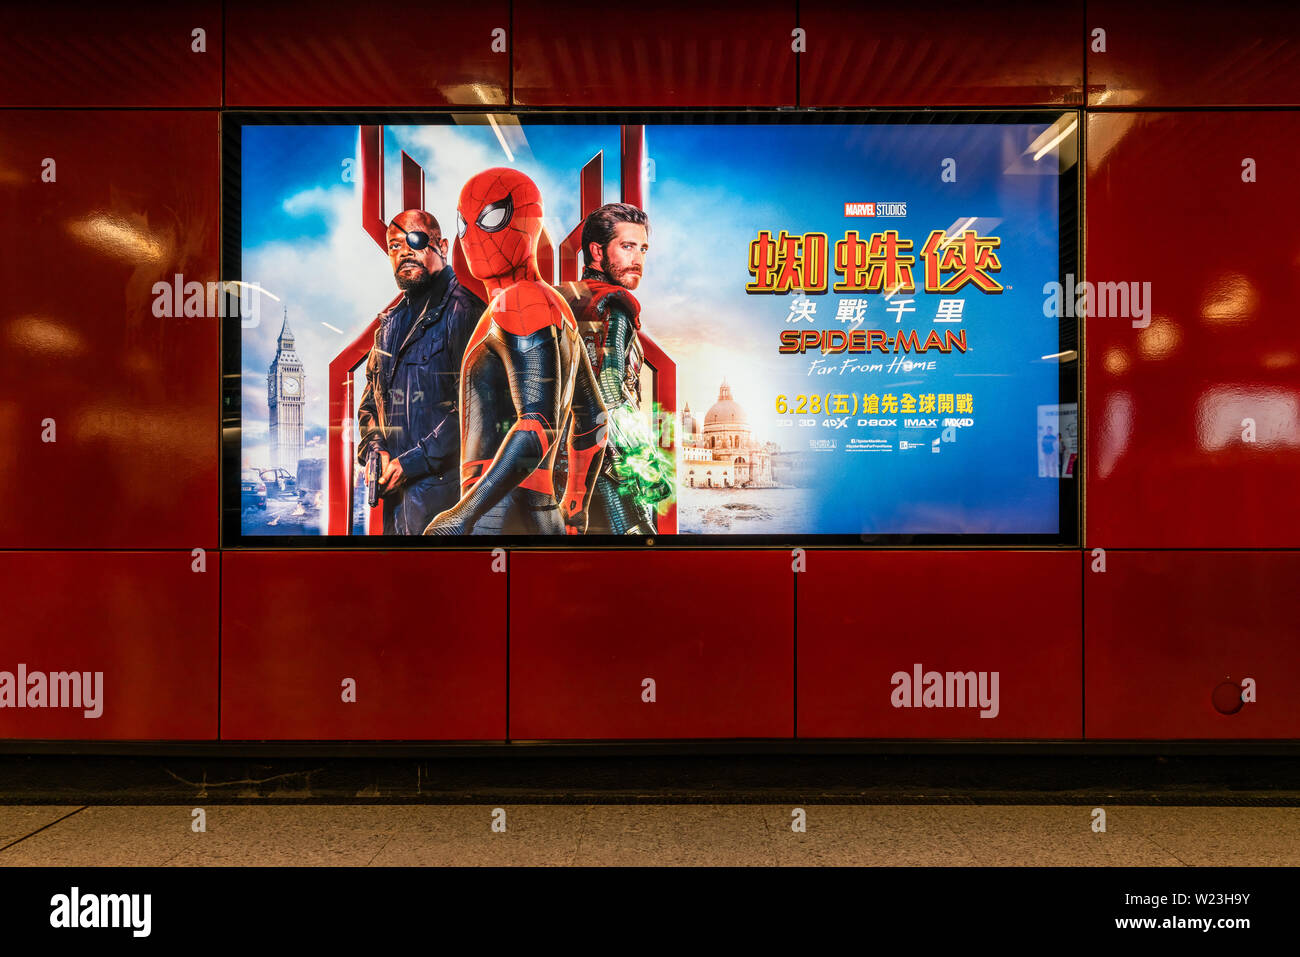 Hong Kong, Hong Kong - Apr 5, 2019: Spider-Man: Weit weg von zu Hause, Film Poster, in öffentlichen U-Bahn Station. Kino Werbung Werbung oder Film Stockfoto